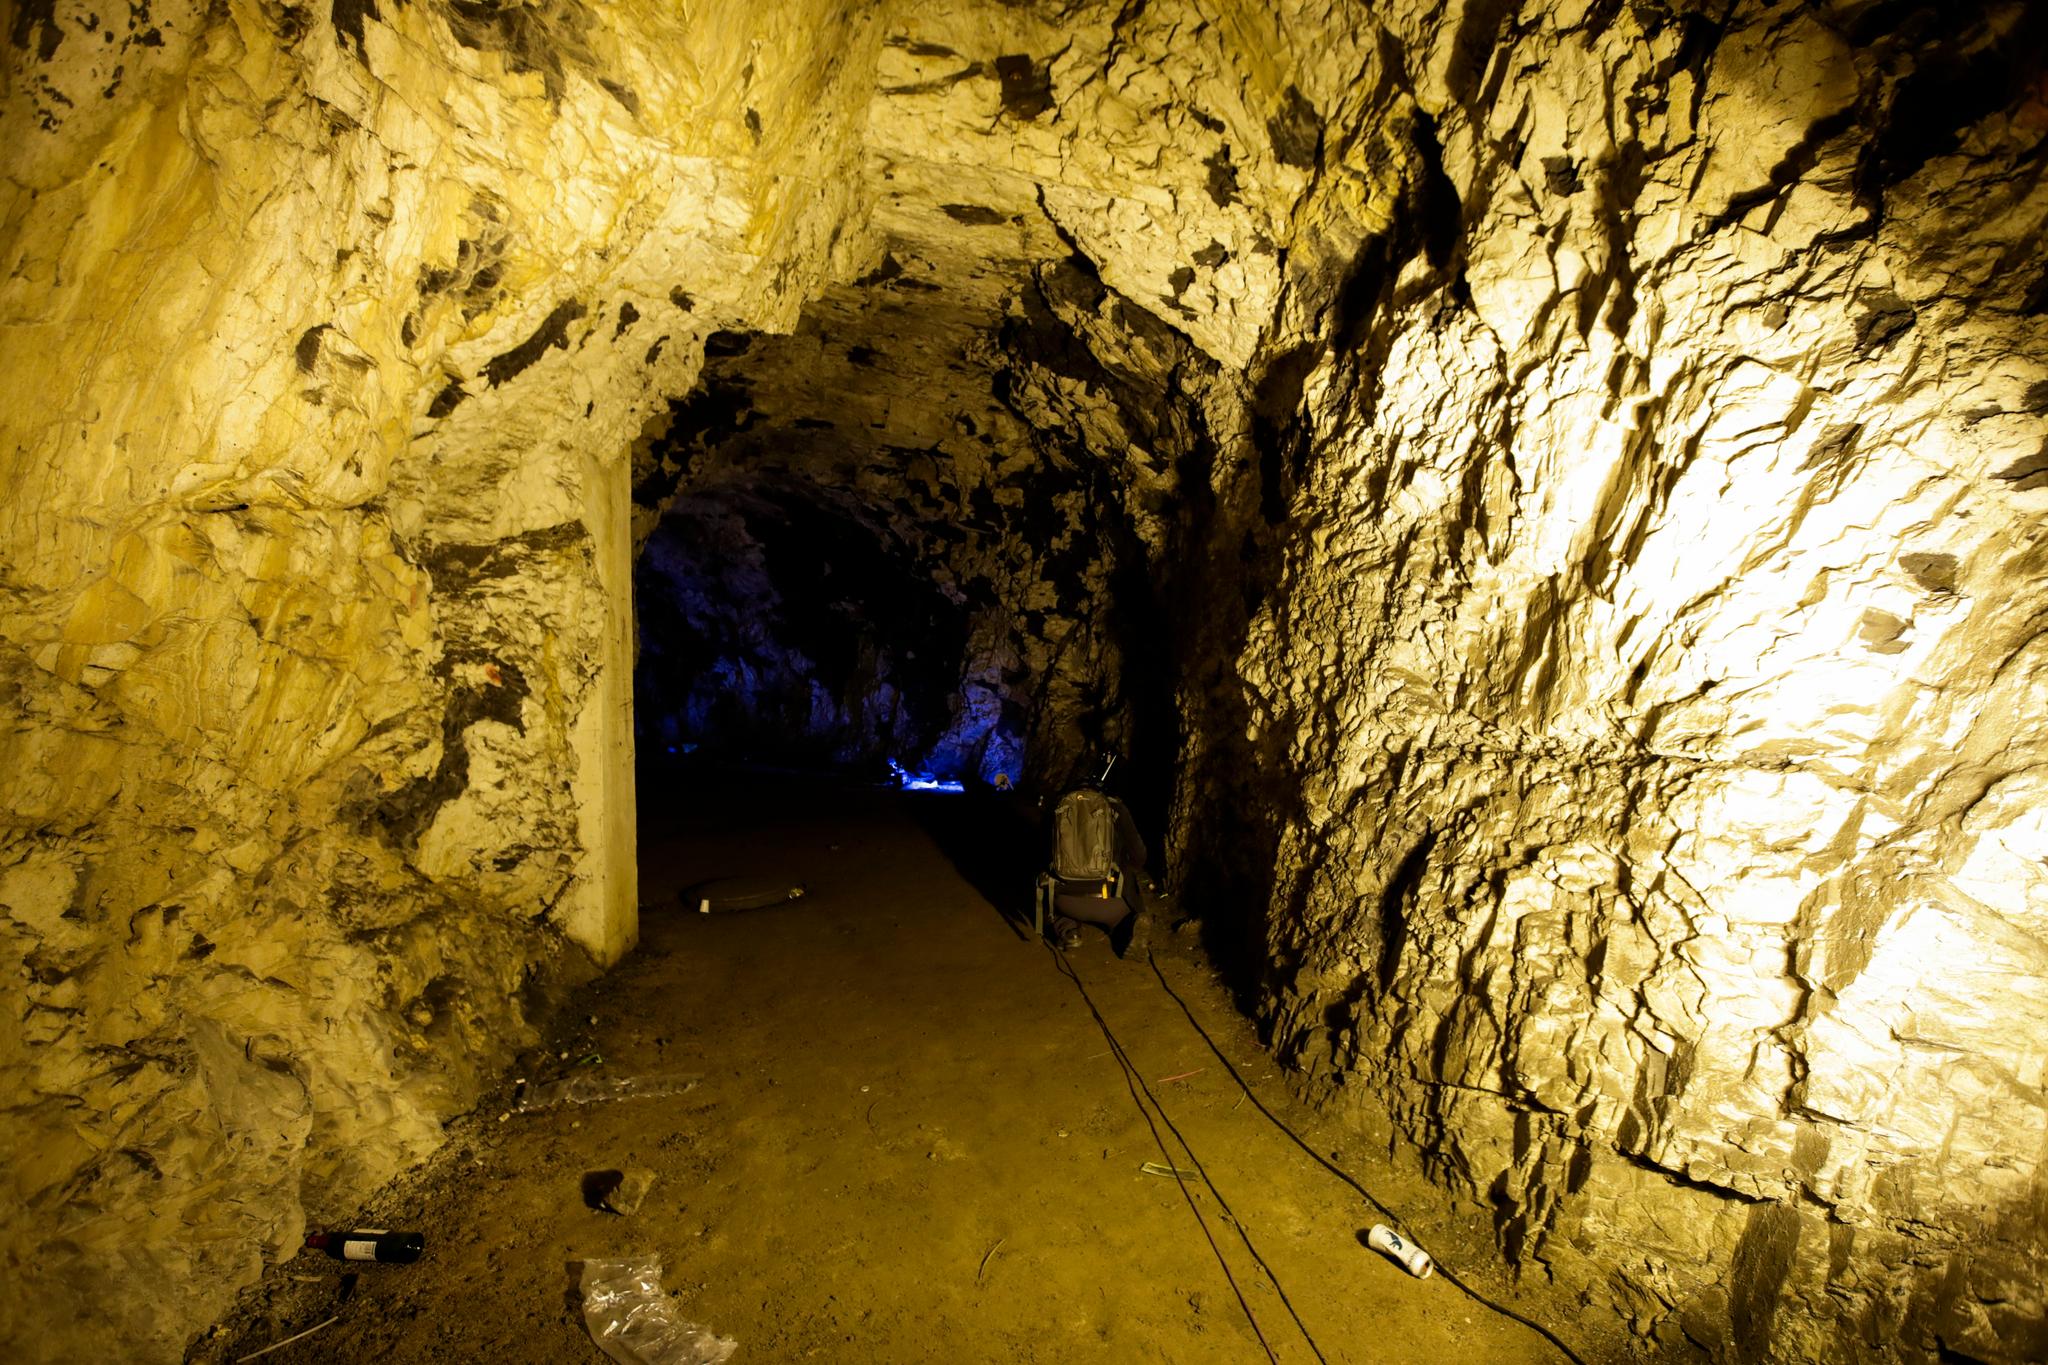 Mange personer ble kullosforgiftet under en ulovlig ravefest i denne grotten på St. Hanshaugen i Oslo i slutten av august. 